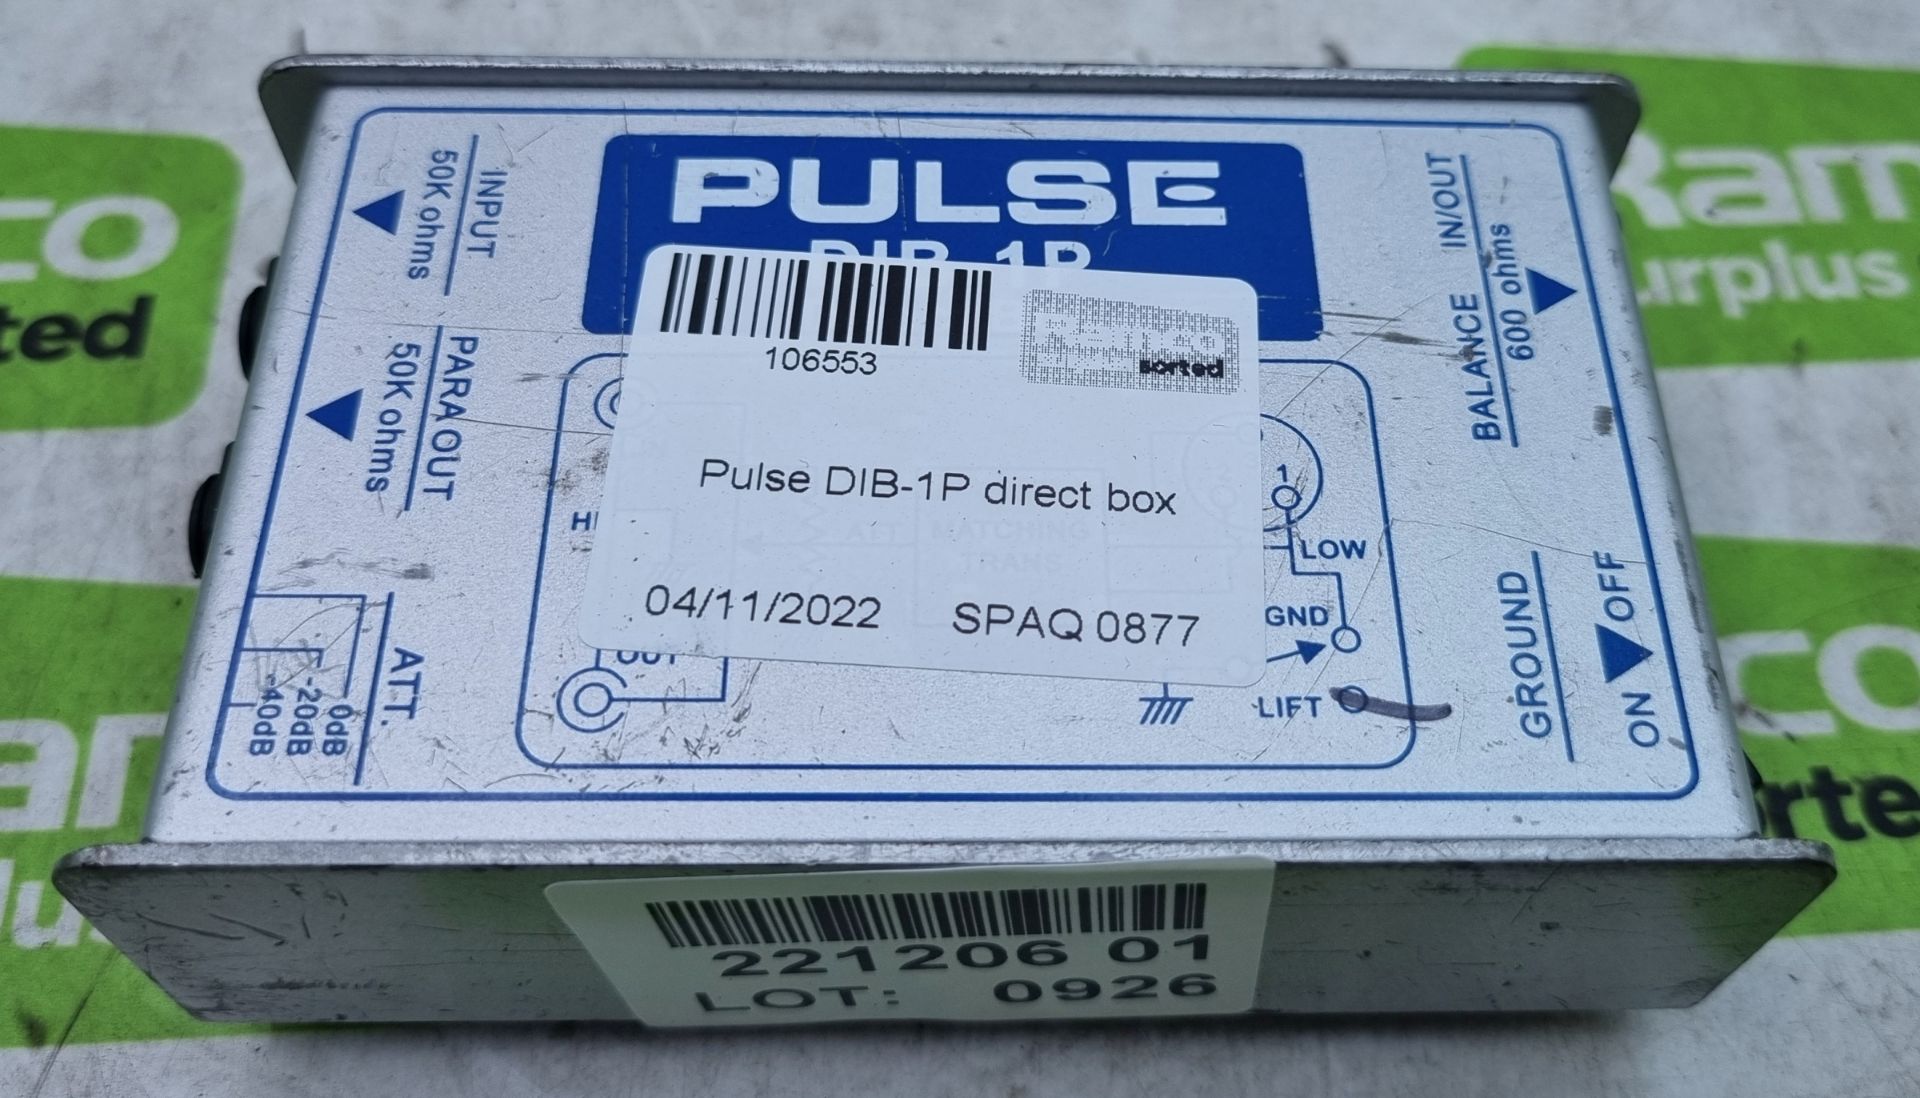 Pulse DIB-1P direct box